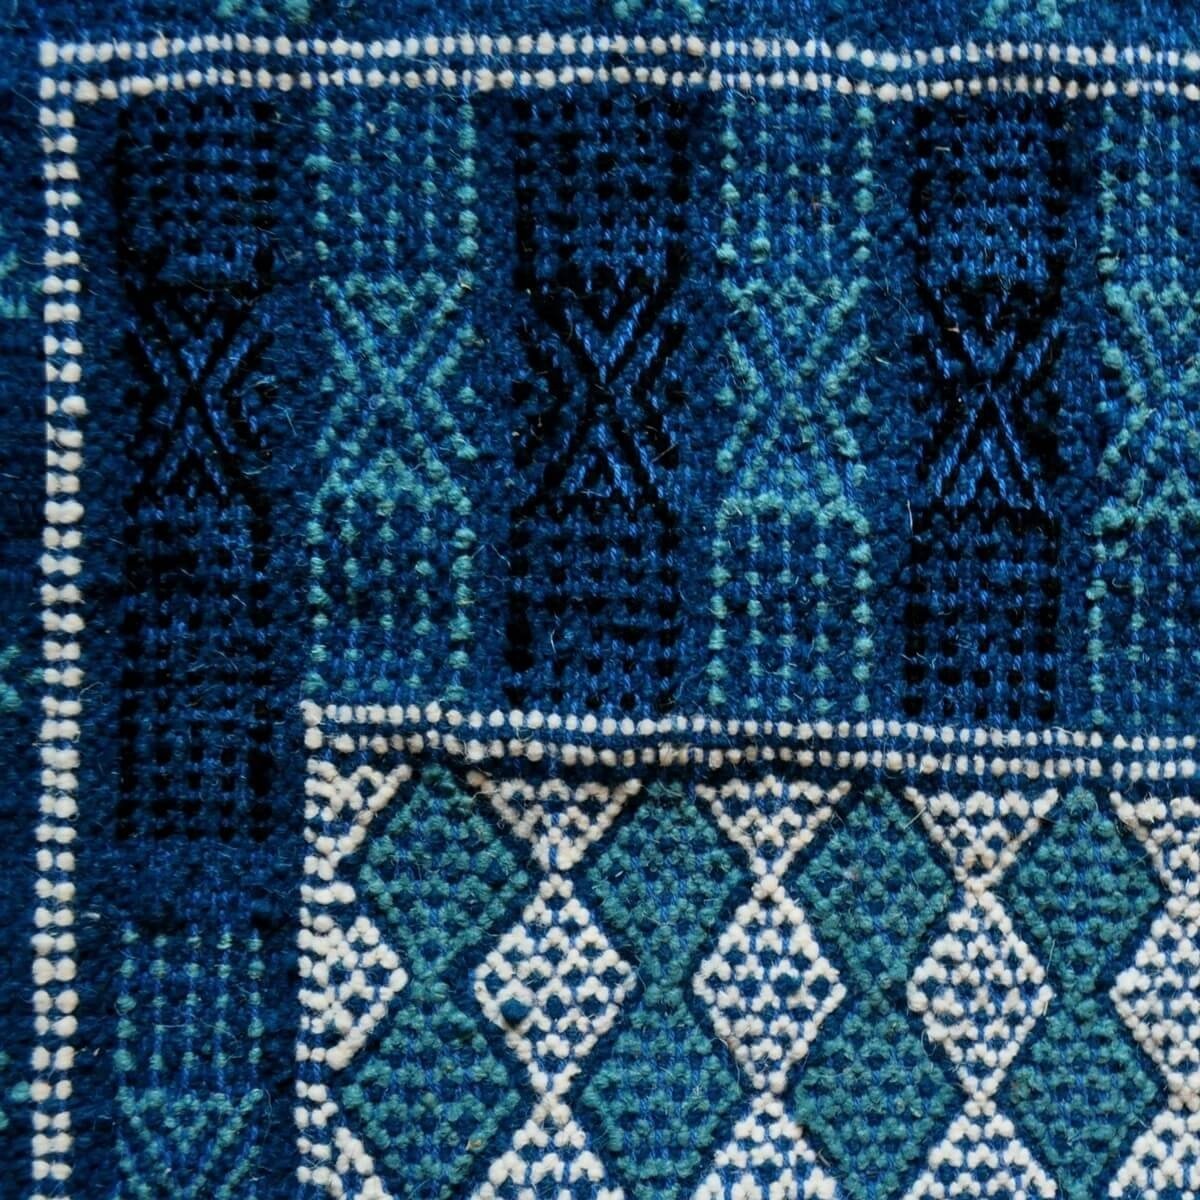 Berber tapijt Tapijt Margoum Nidhal 120x180 Blauw/Wit (Handgeweven, Wol, Tunesië) Tunesisch Margoum Tapijt uit de stad Kairouan.